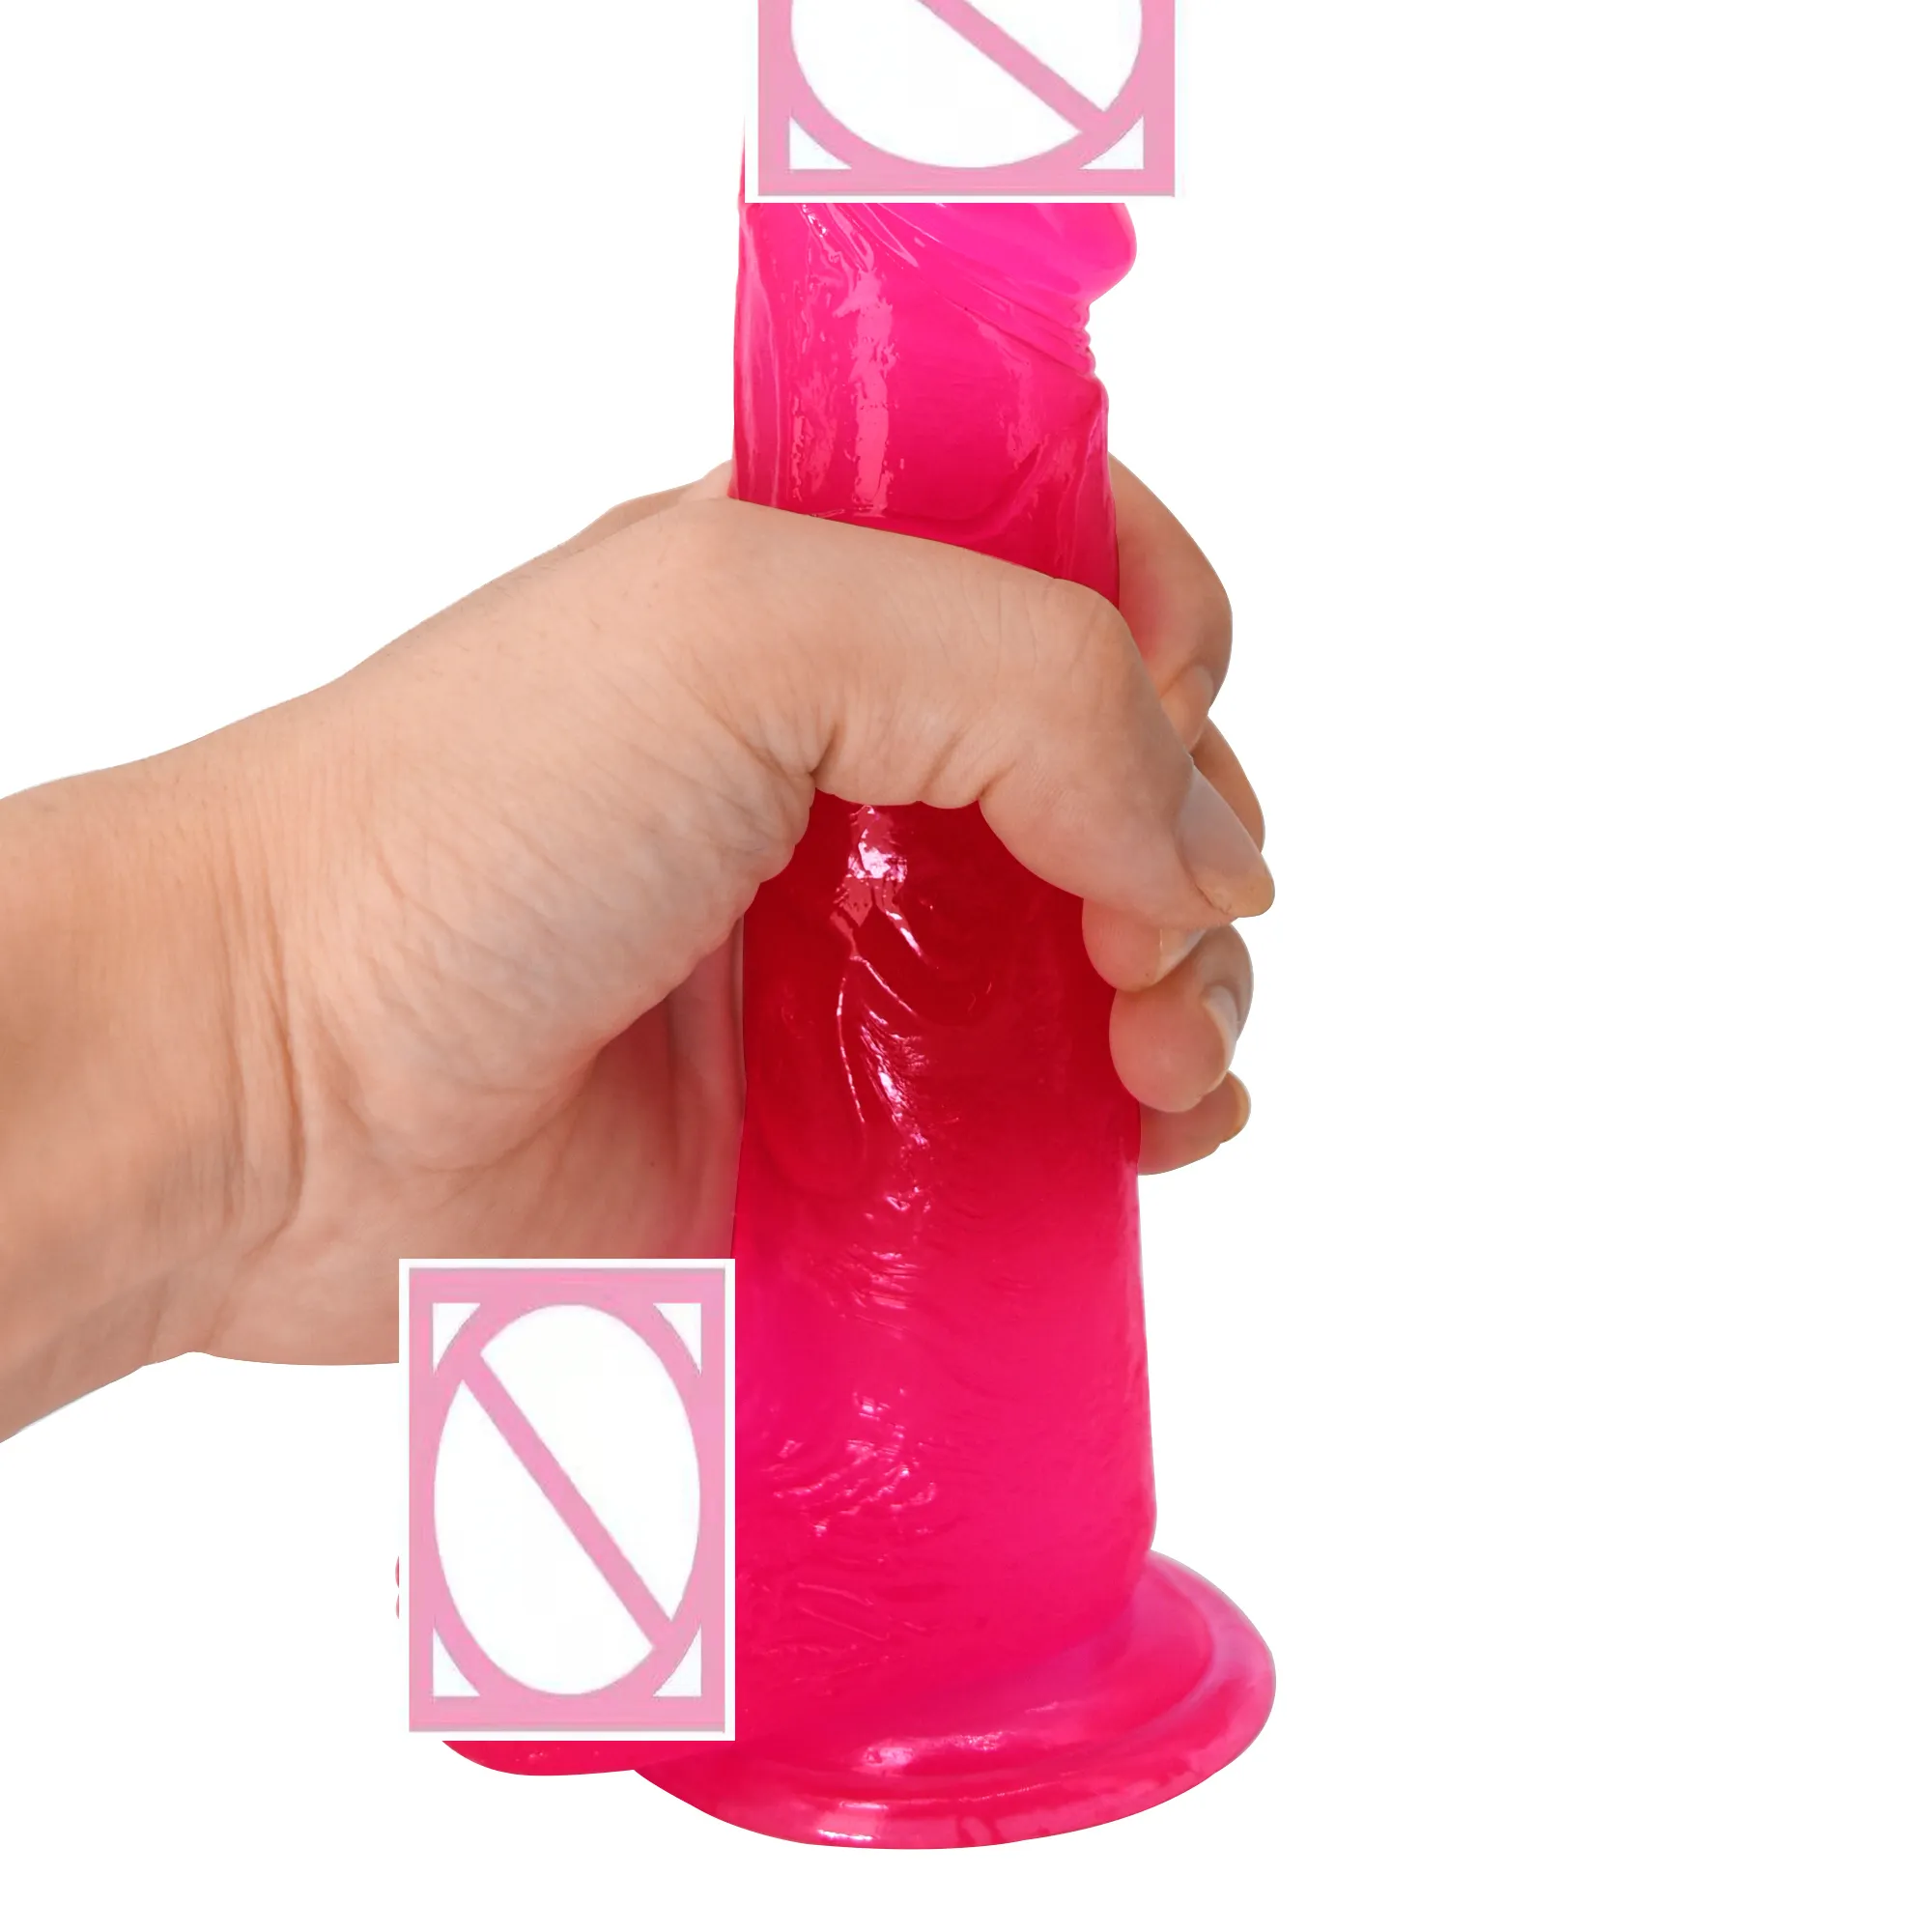 Xxx hot oem xxxxxx video per la macchina del sesso della vagina prodotti del sesso realistico cristallo trasparente colorato dildo sextoy juguetes sexual